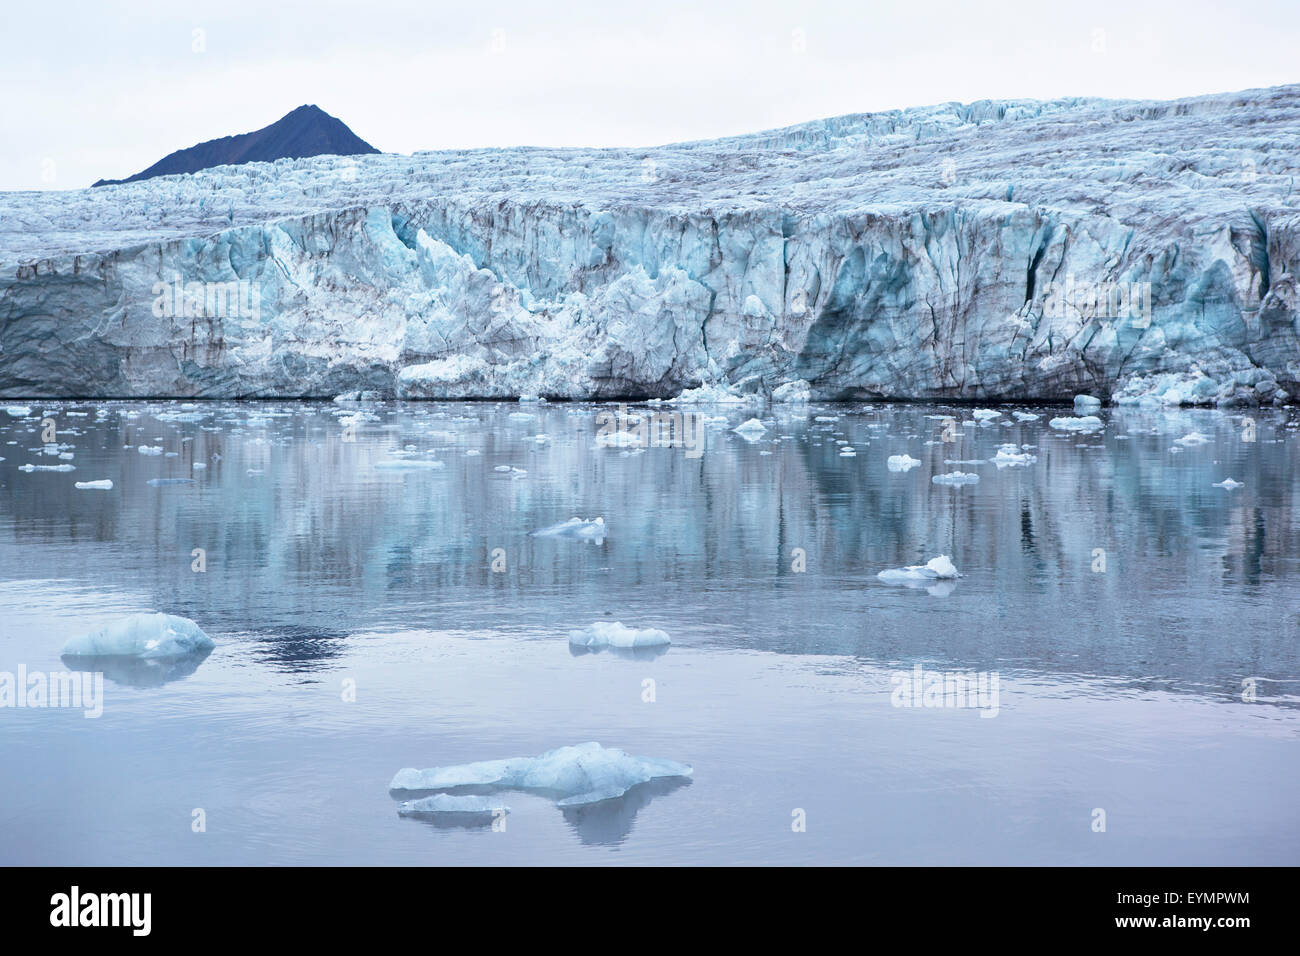 El glaciar ártico Svalbard, Spitsbergen, Noruega Foto de stock